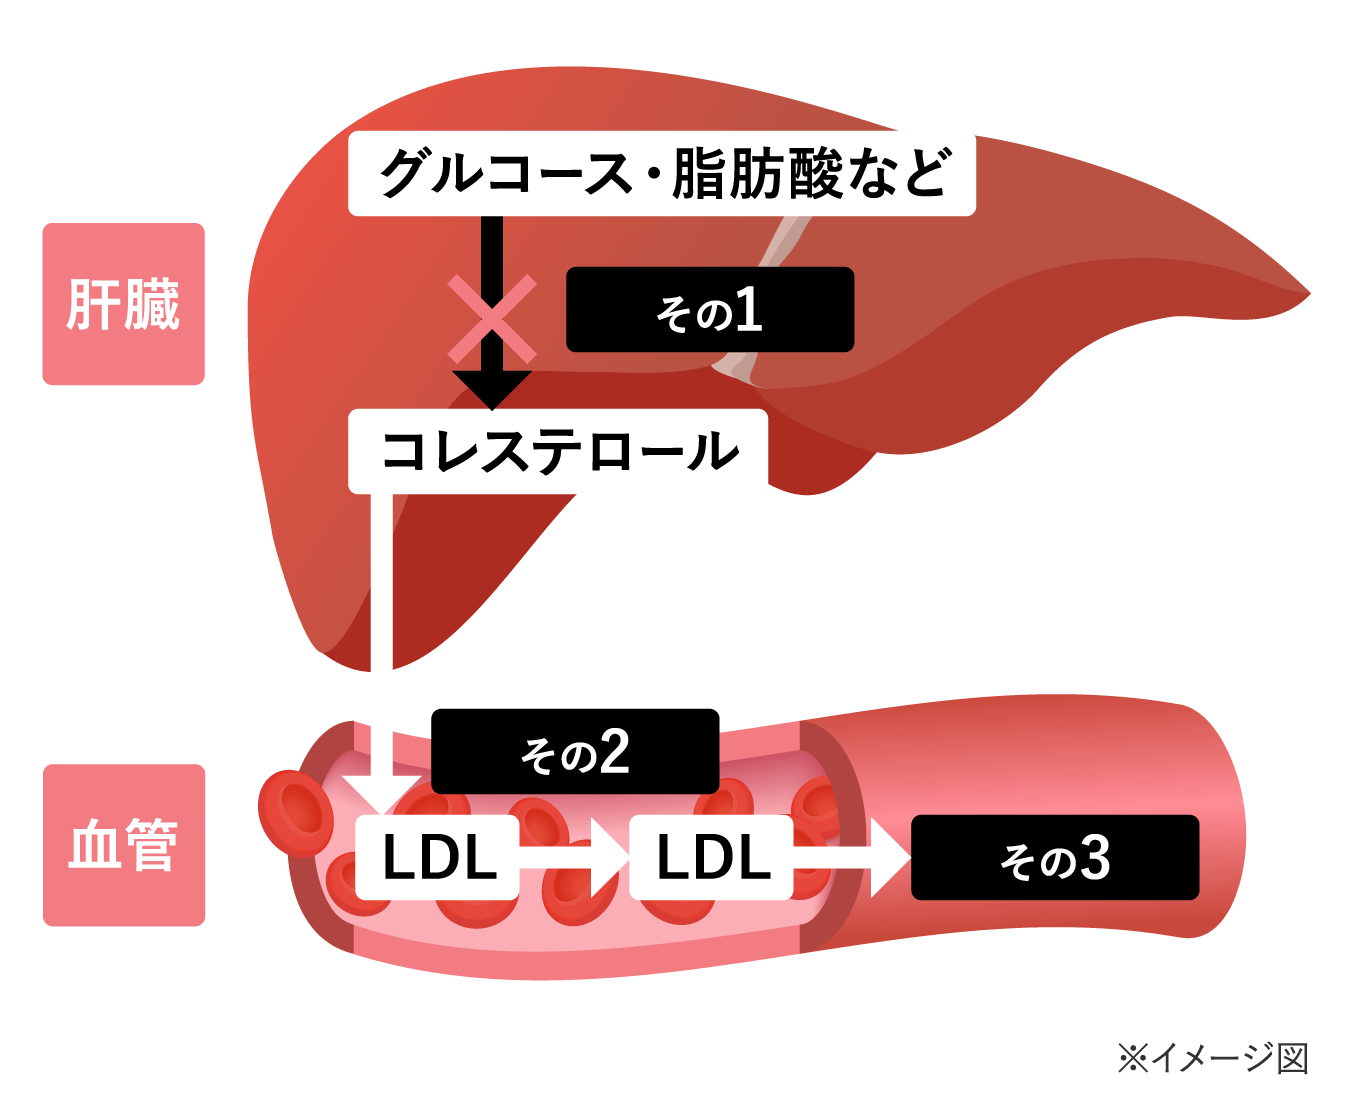 リコピンがLDLコレステロールを下げる3つの仕組みの図